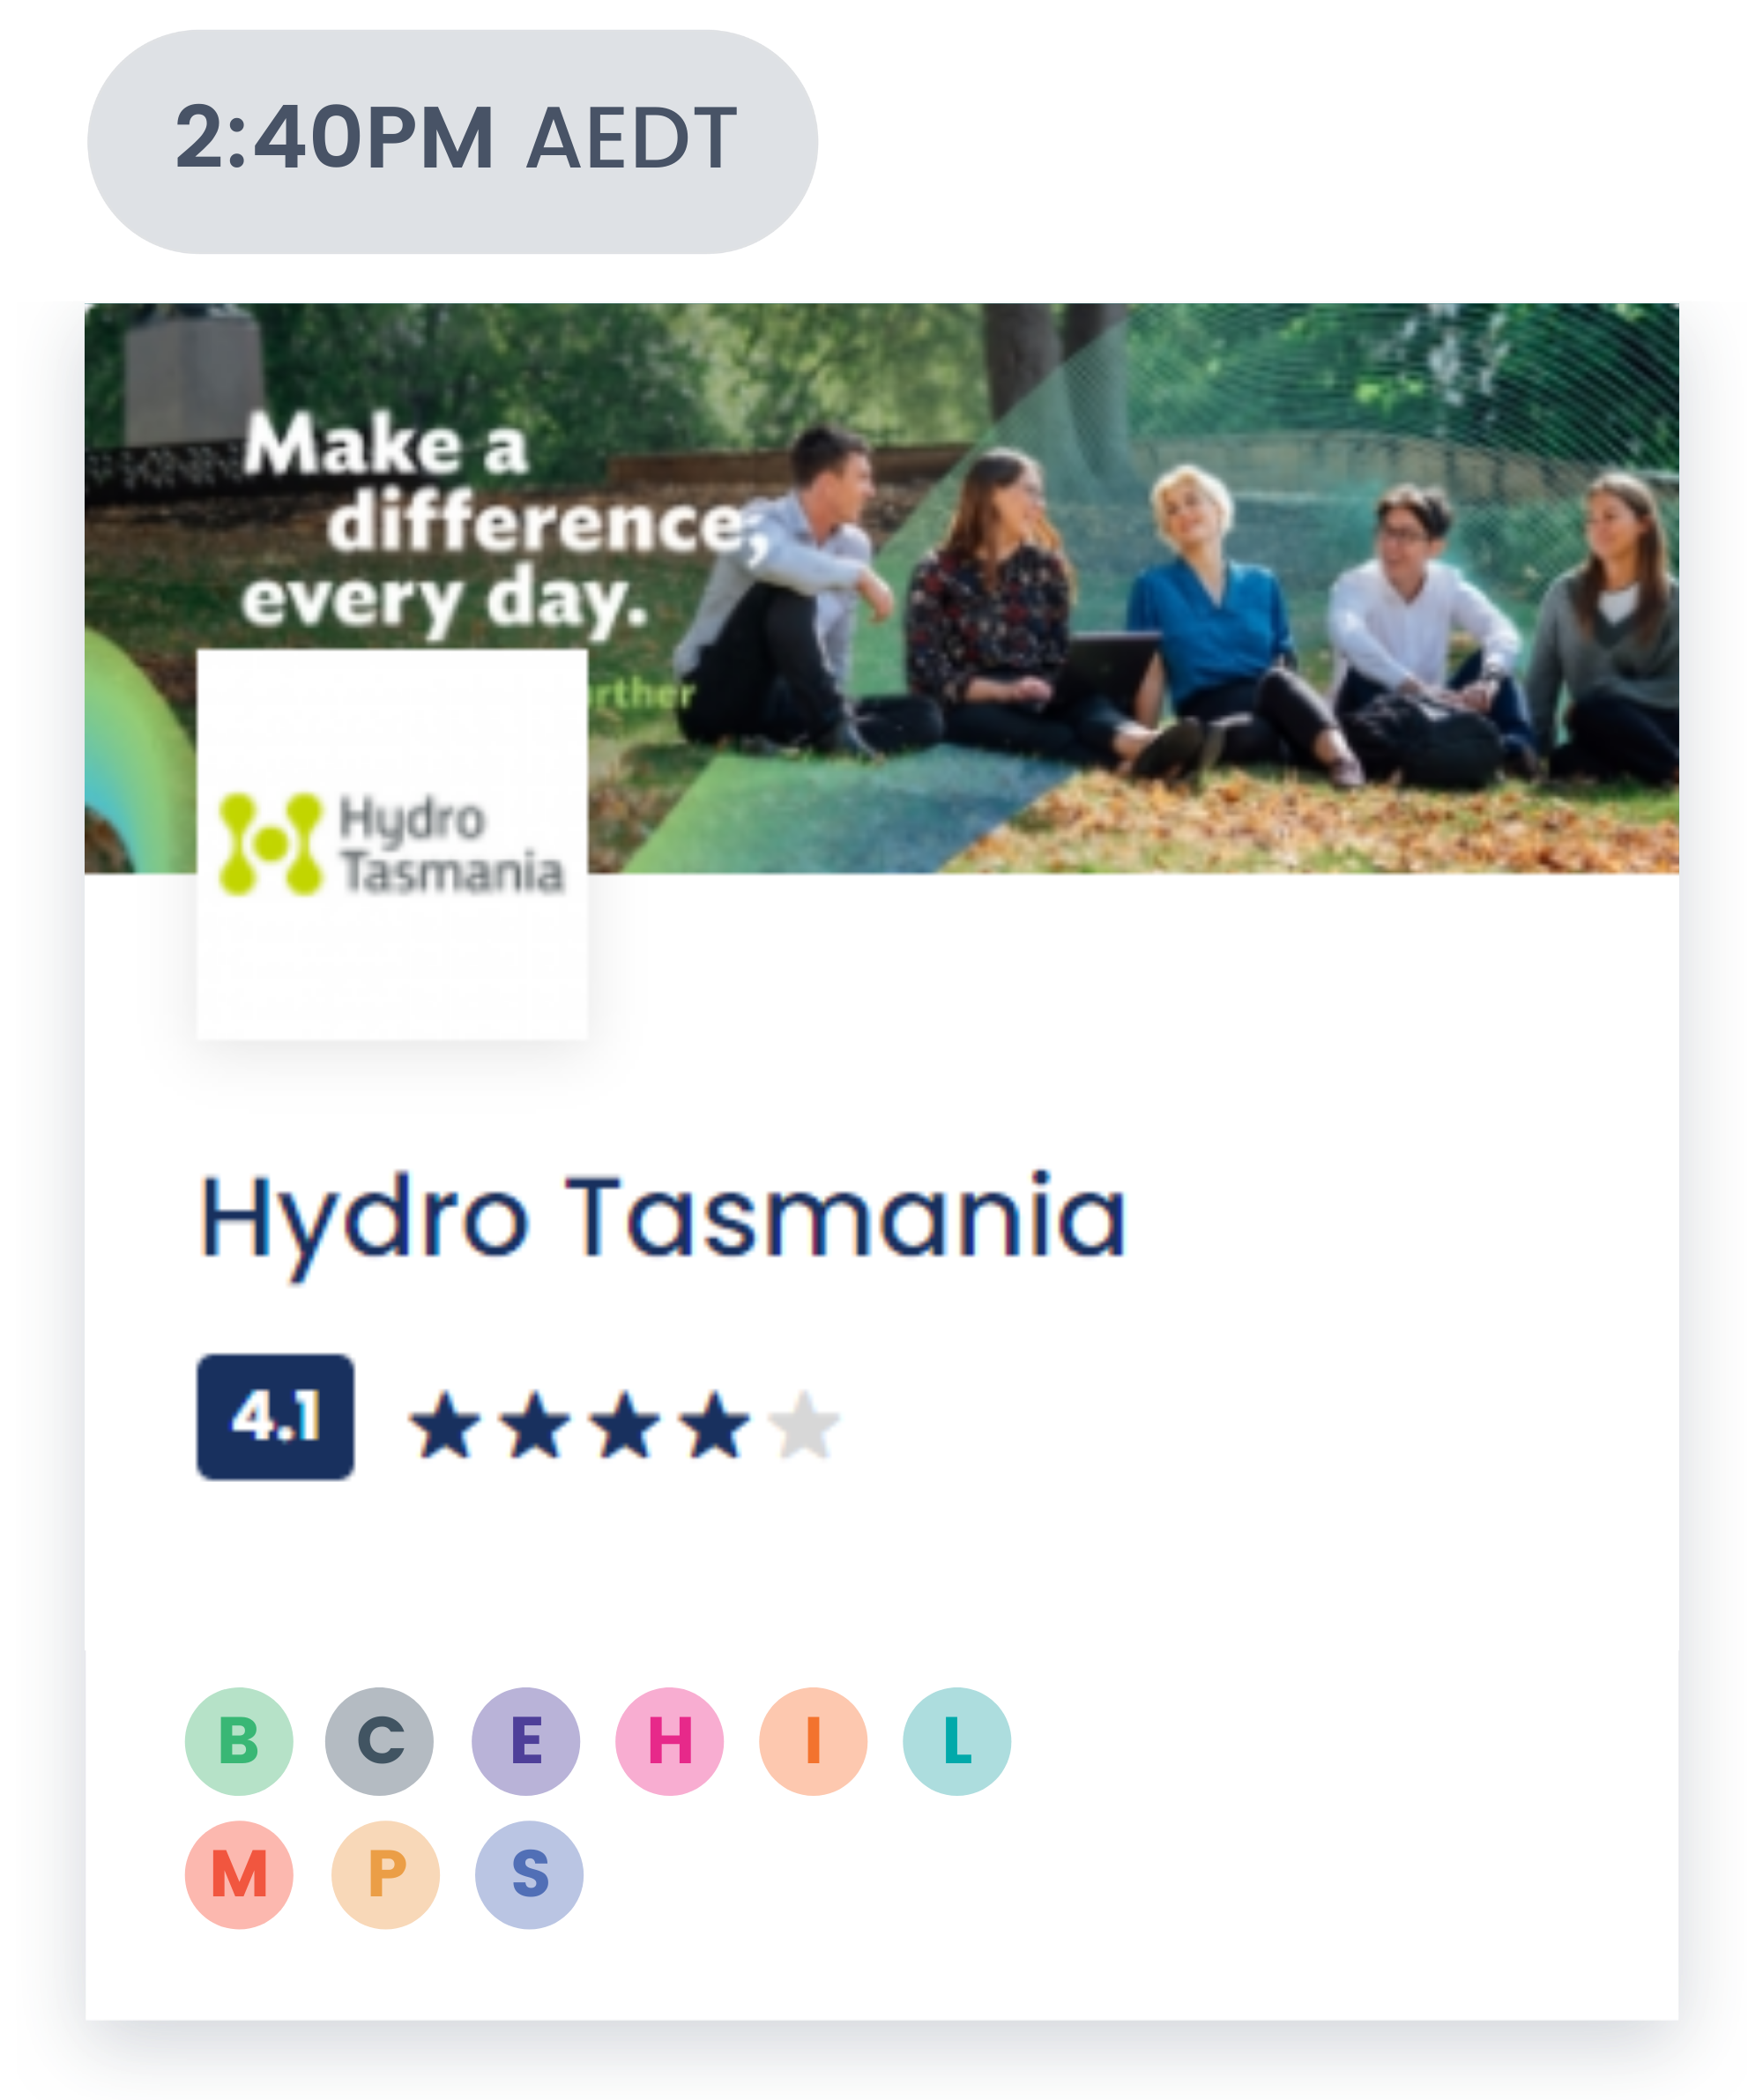 anz-super-fair-hydro-tasmania-tile.png 